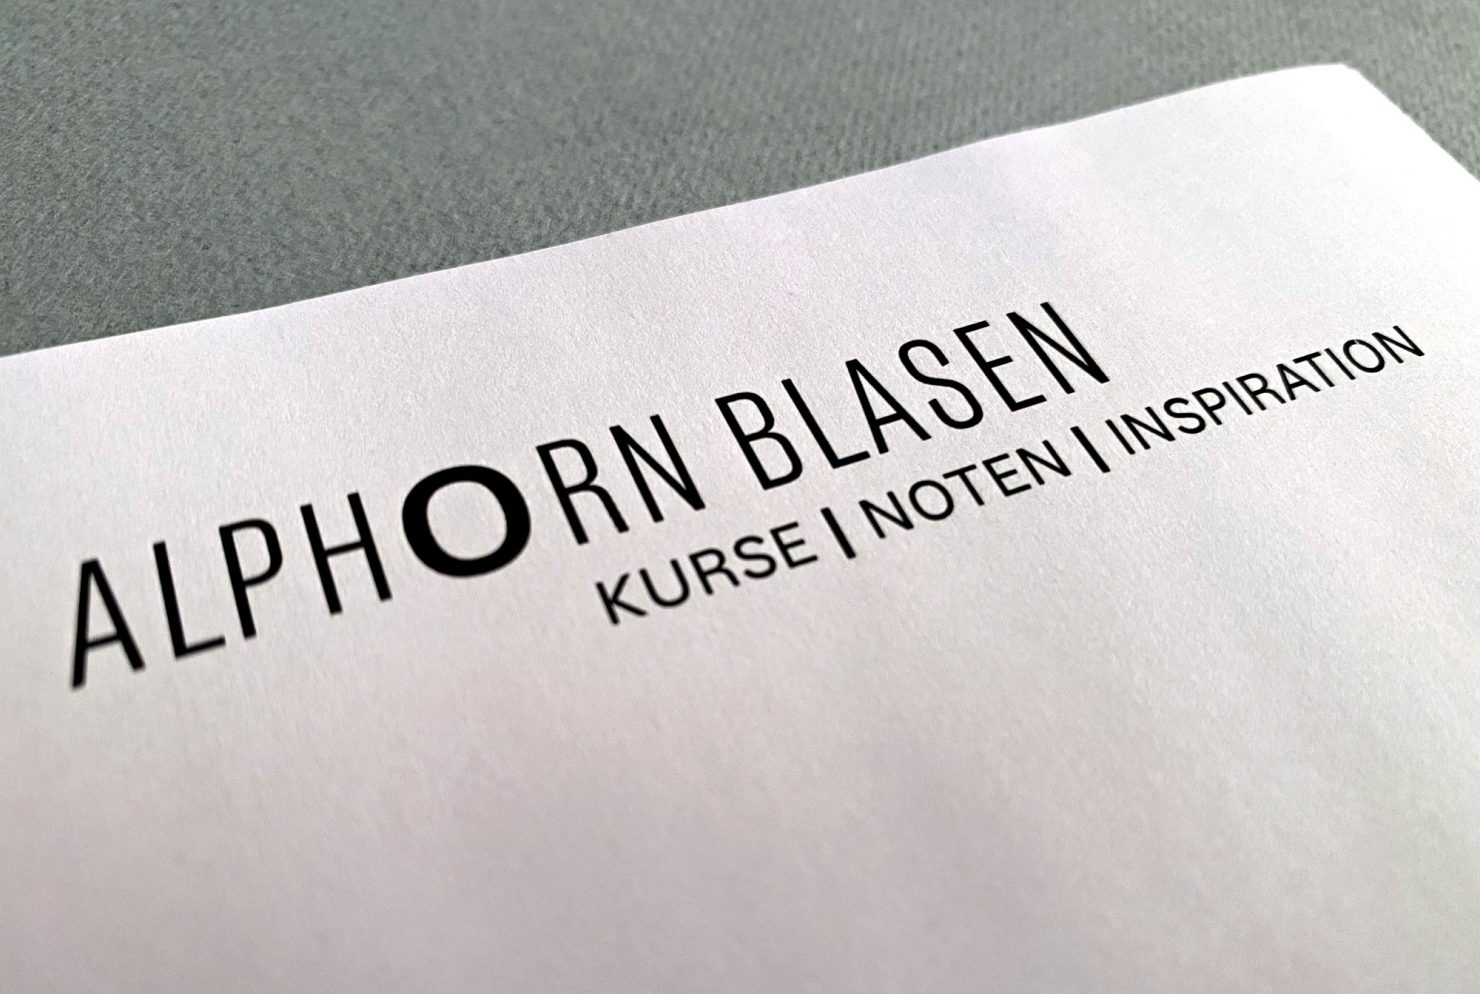 Briefpapier Wortmarke Logo Alphorn Blasen